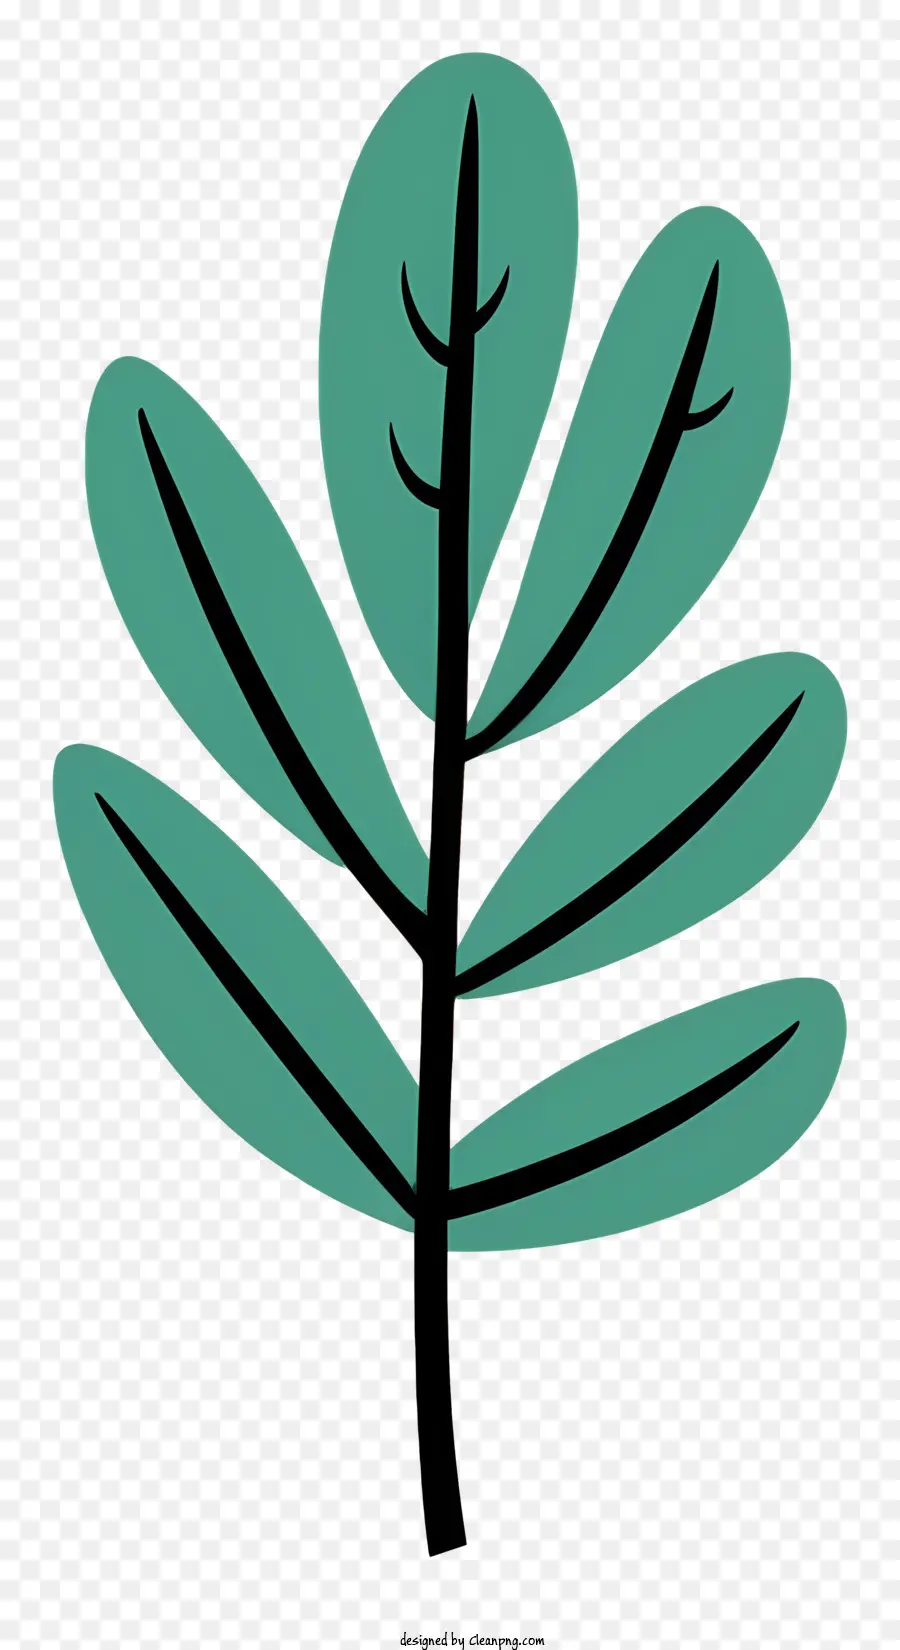 cây lá xanh lá nhỏ thiết kế phẳng không có bóng không có bóng - Cây lá xanh với lá nhỏ, thiết kế phẳng